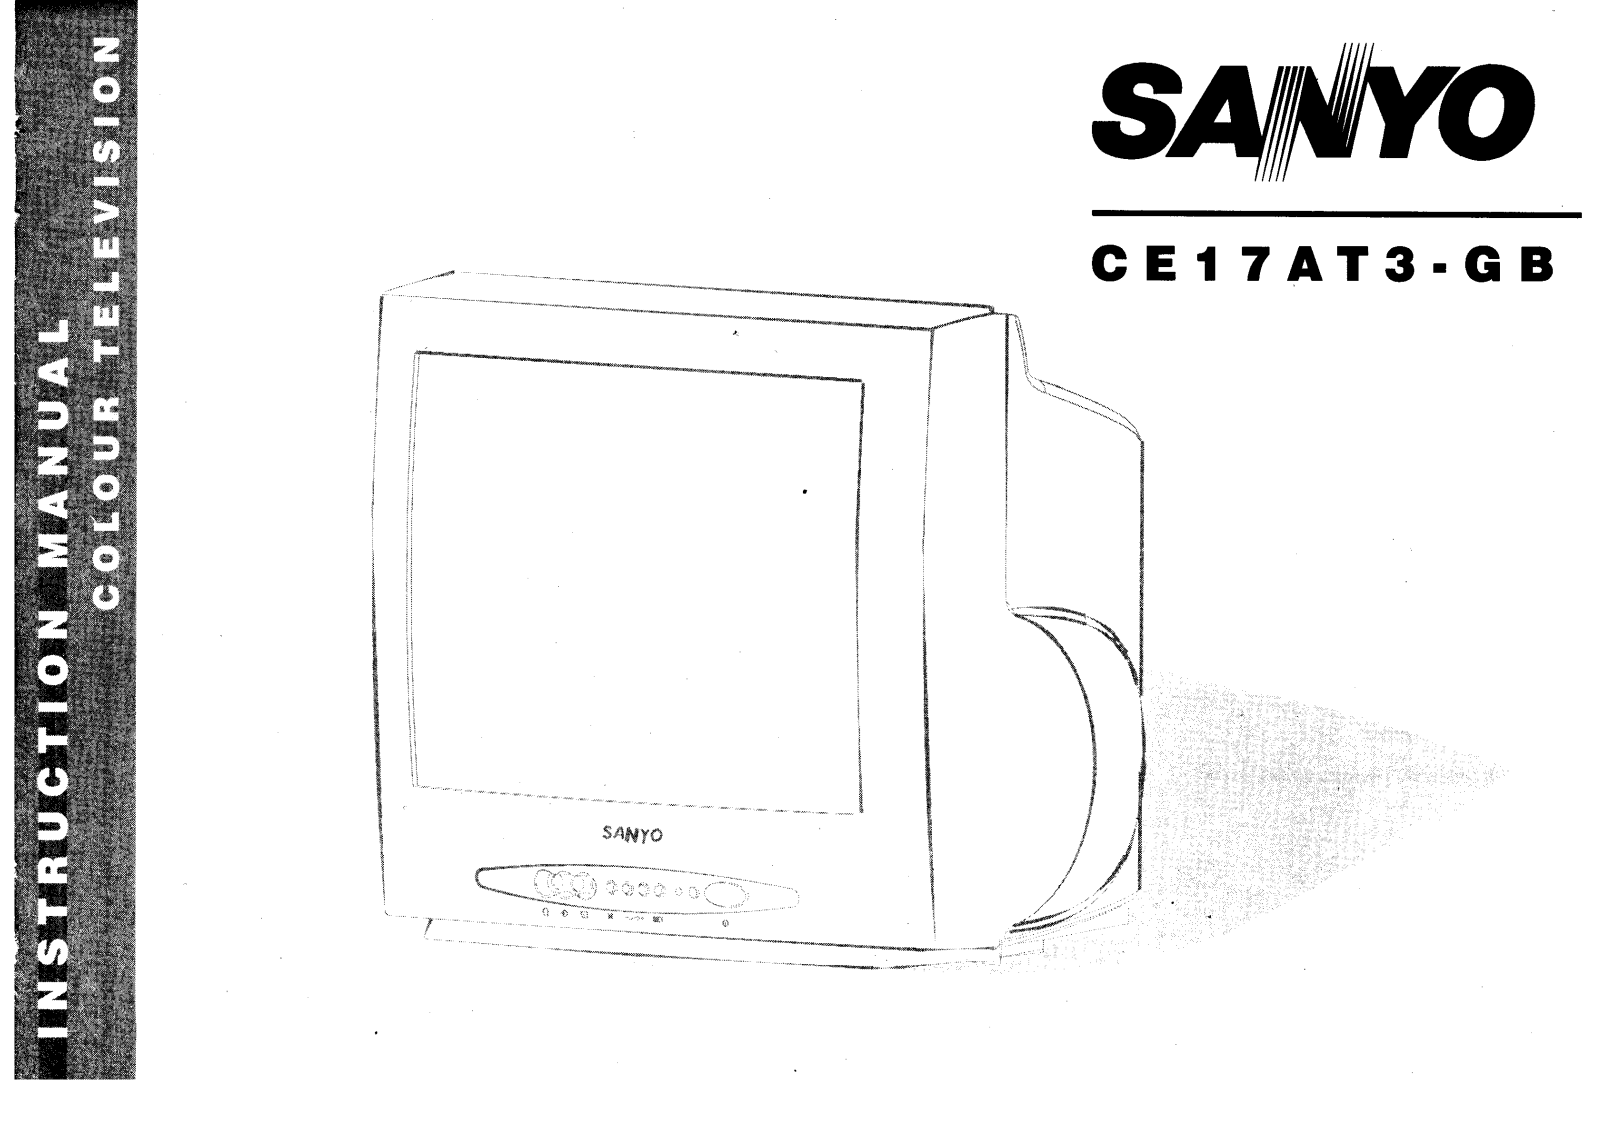 Sanyo CE17AT3-GB Instruction Manual